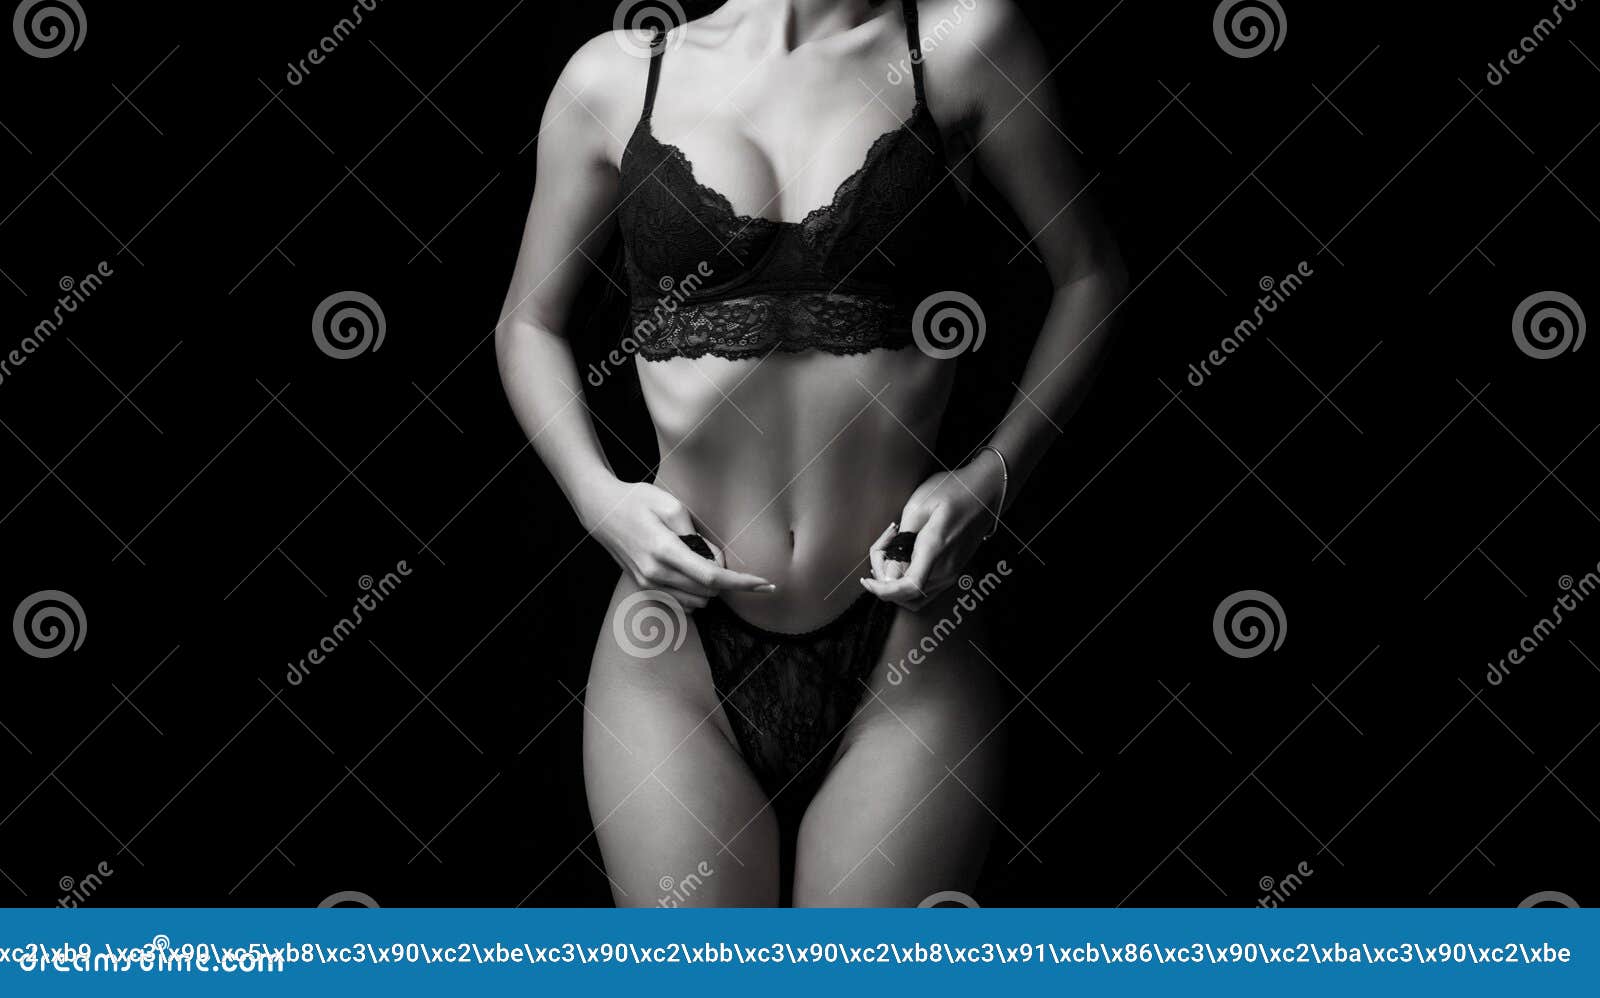 Sexy female body, woman in white underwear, girl in lingerie